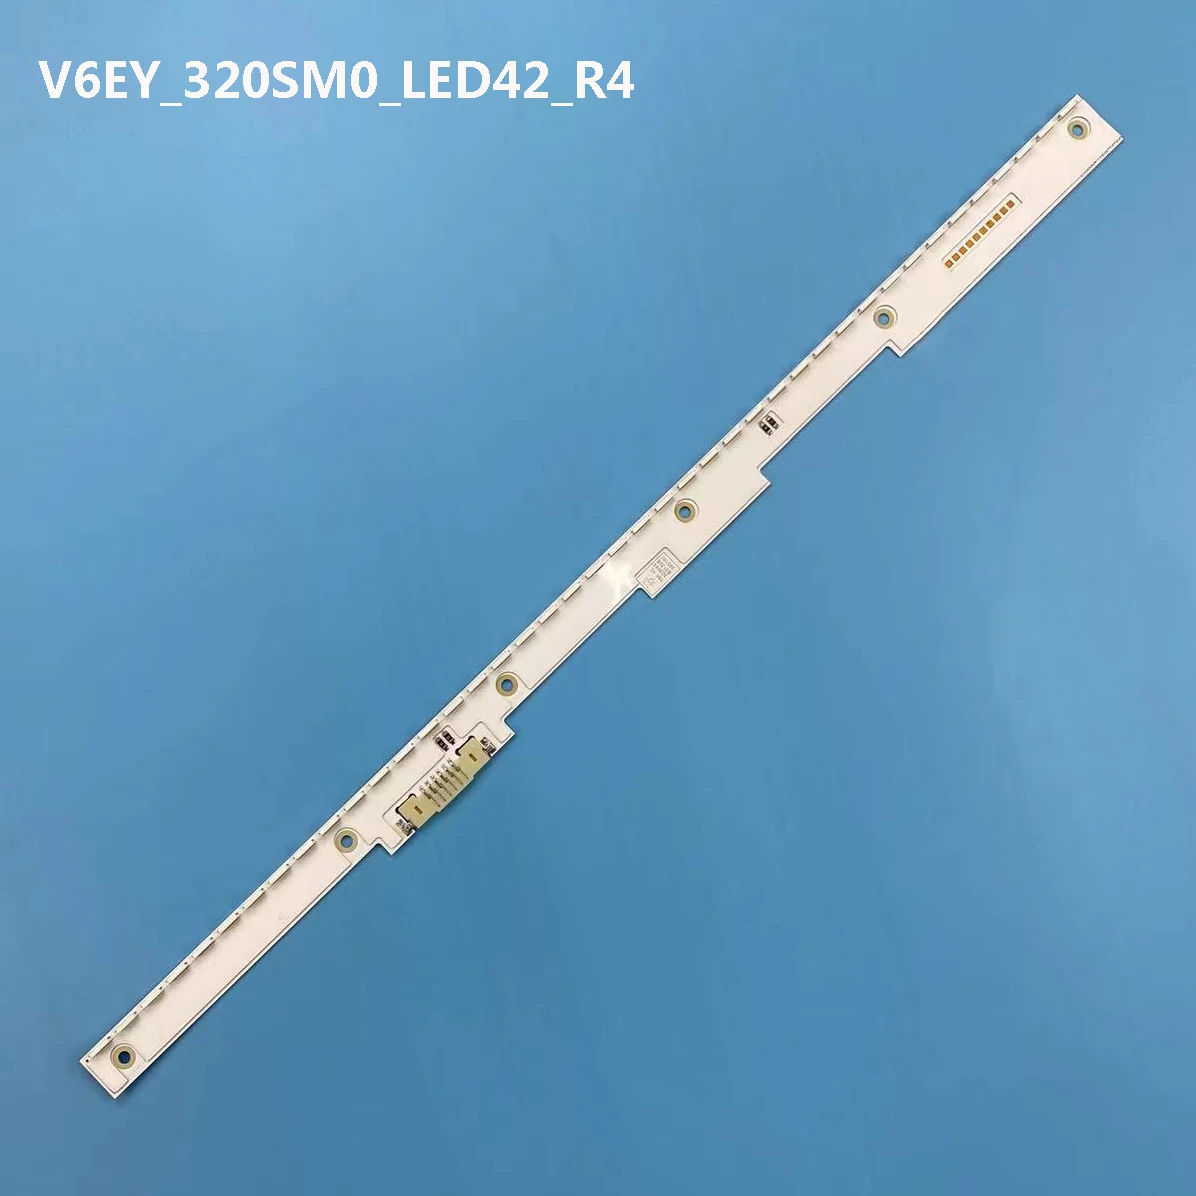 LED arka ışık şeridi için UE32M5502AK UE32M5620AK UE32M5525AK UE32M5522 UE32K5600AK UE32M5575 LM41-00501A V6EY_320SM0_LED42_R4